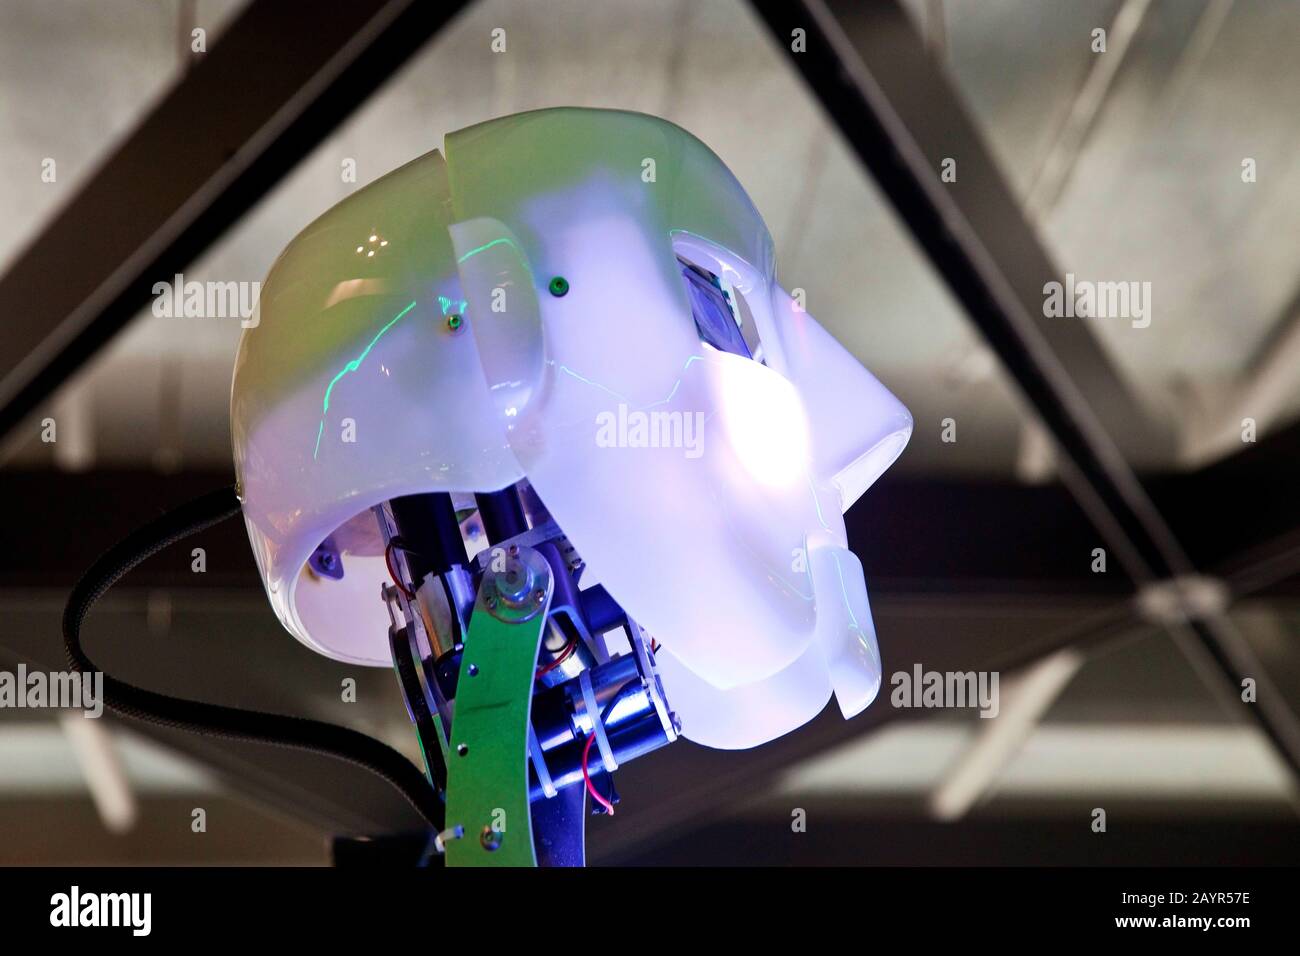 head of humanoid robot RoboThespian Stock Photo